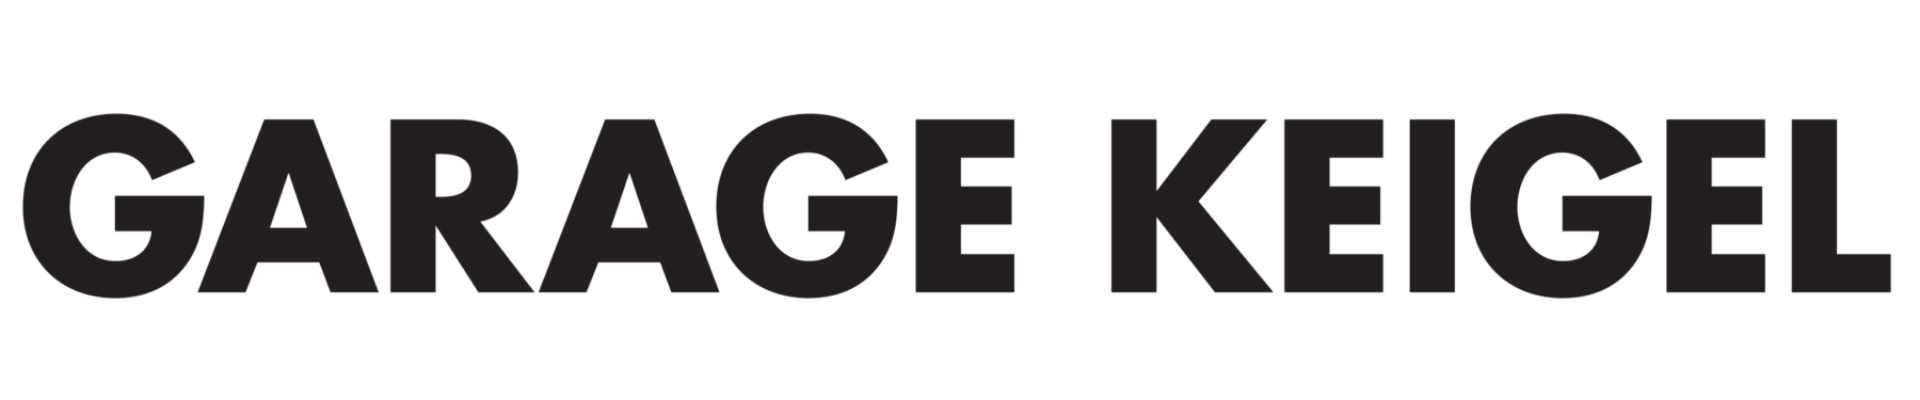 Garage keigel logo vektorisiert